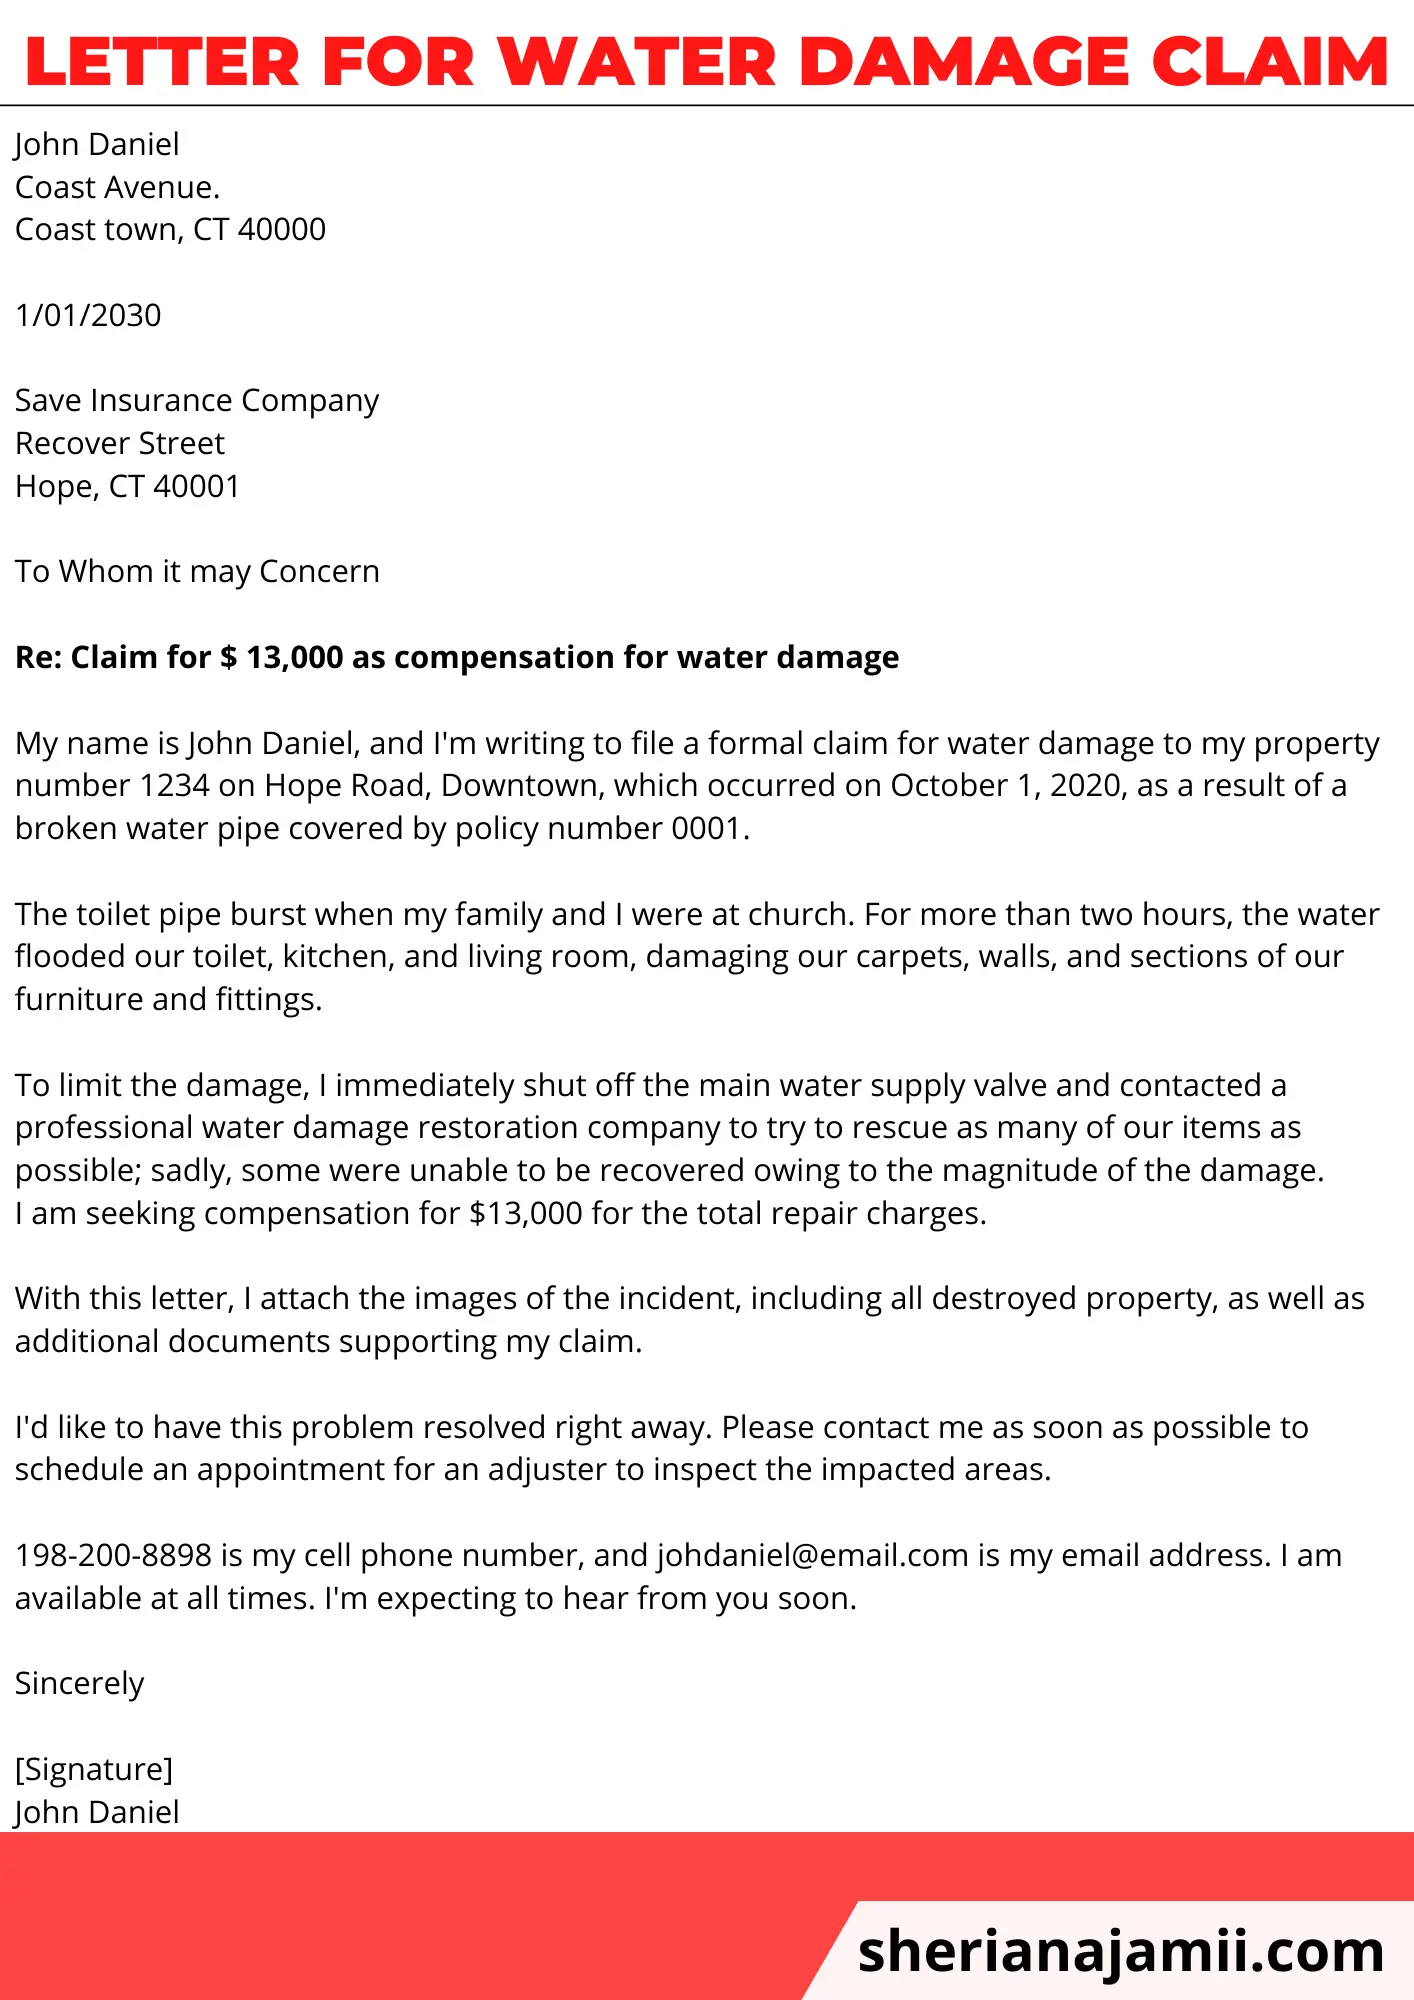 letter for water damage claim, sample letter for water damage claim